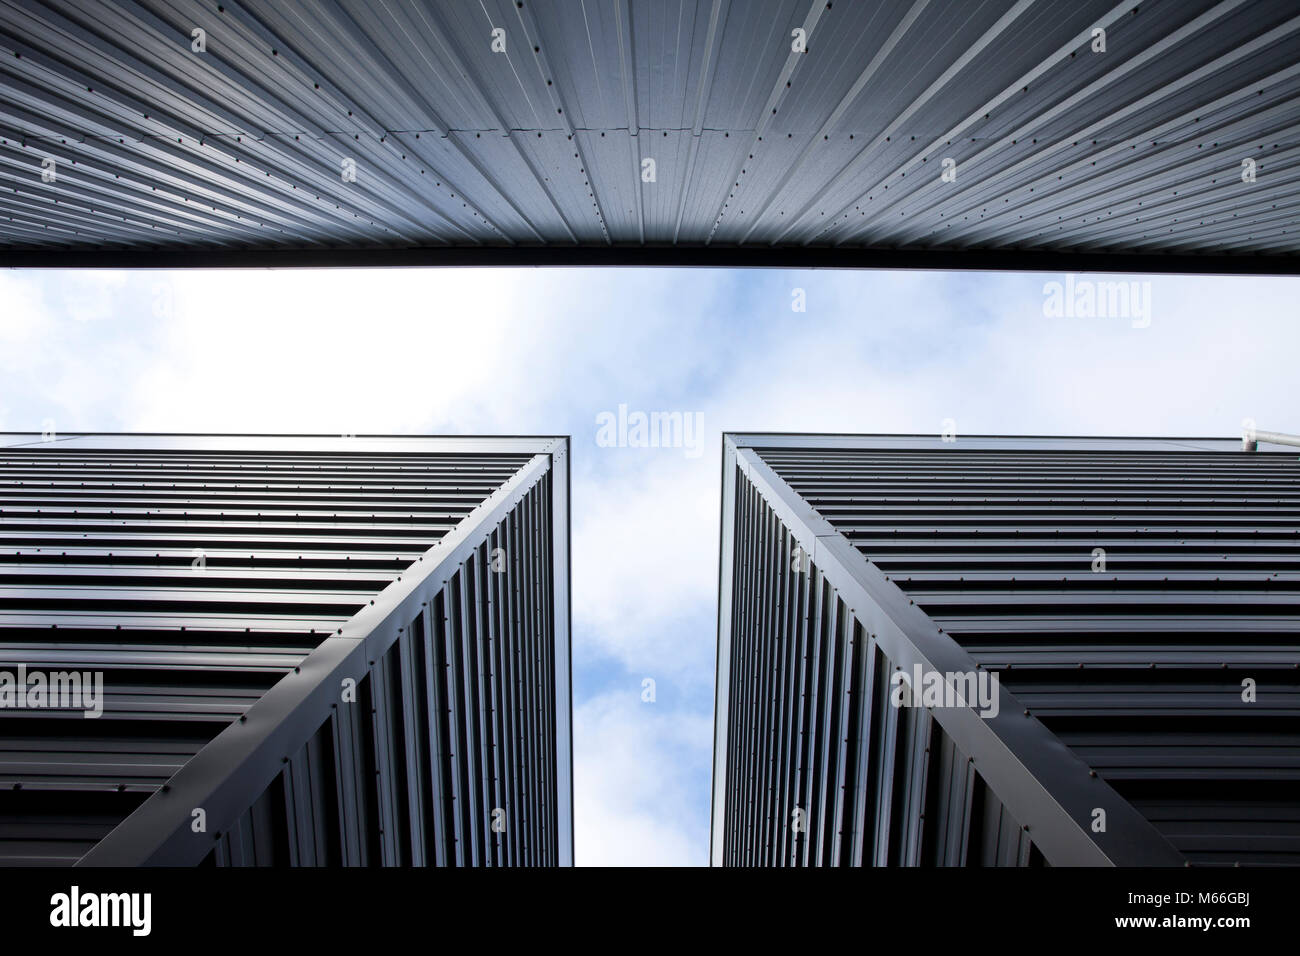 Abstraite de bardage en acier sur le blocage d'entreposage moderne avec ciel avec les nuages d'un ciel bleu pâle Banque D'Images